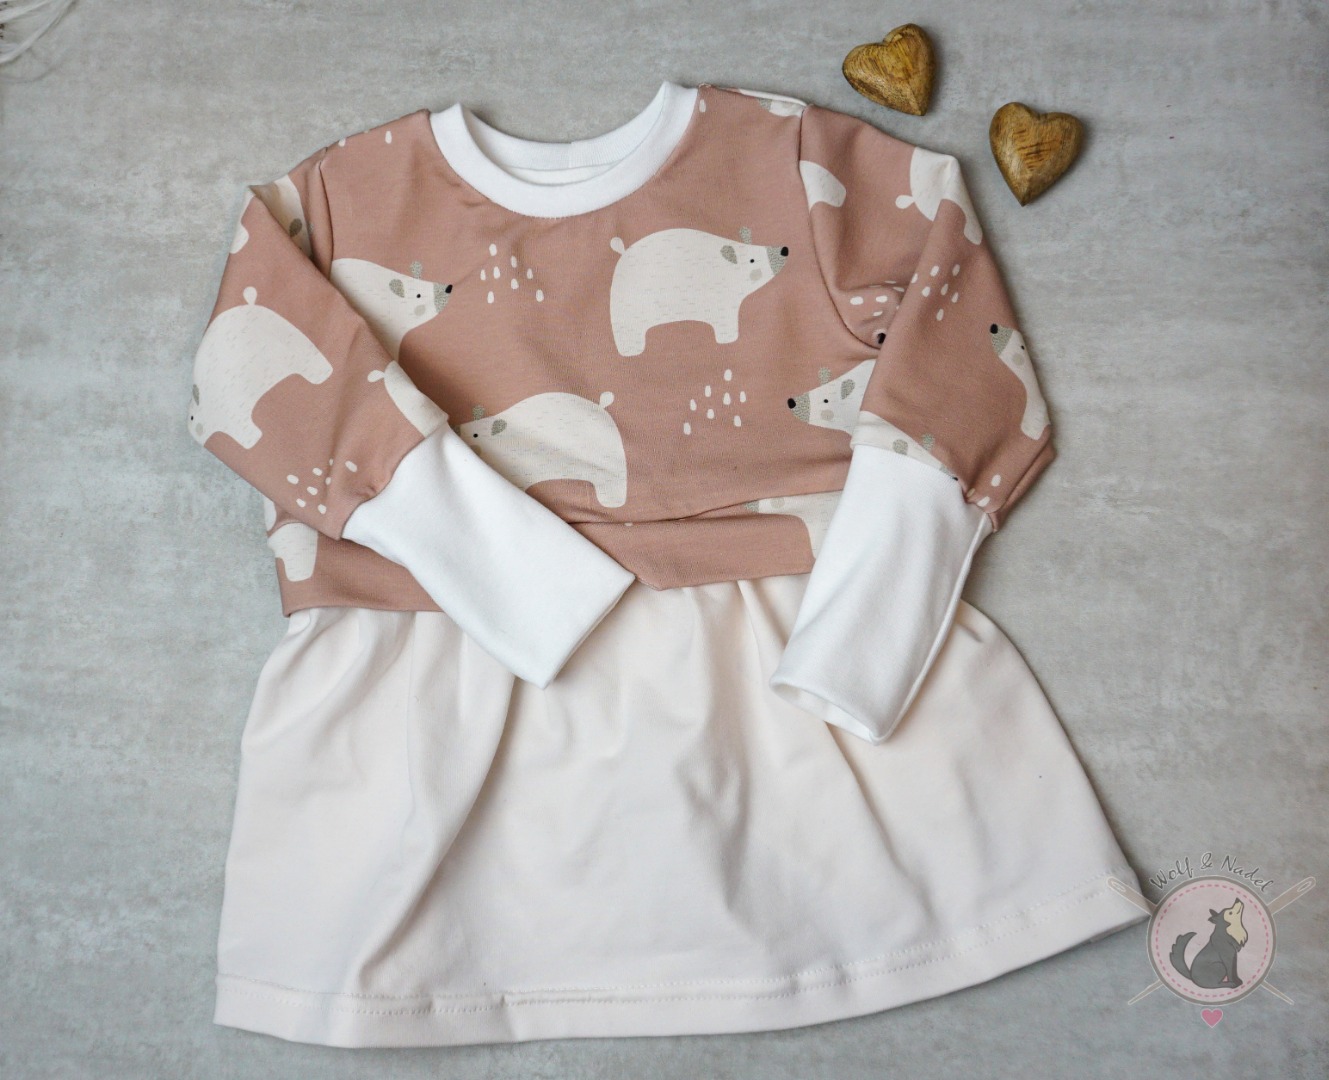 Sofortkauf Handmade Girlysweater Eisbär Gr 80 von Wolf & Nadel